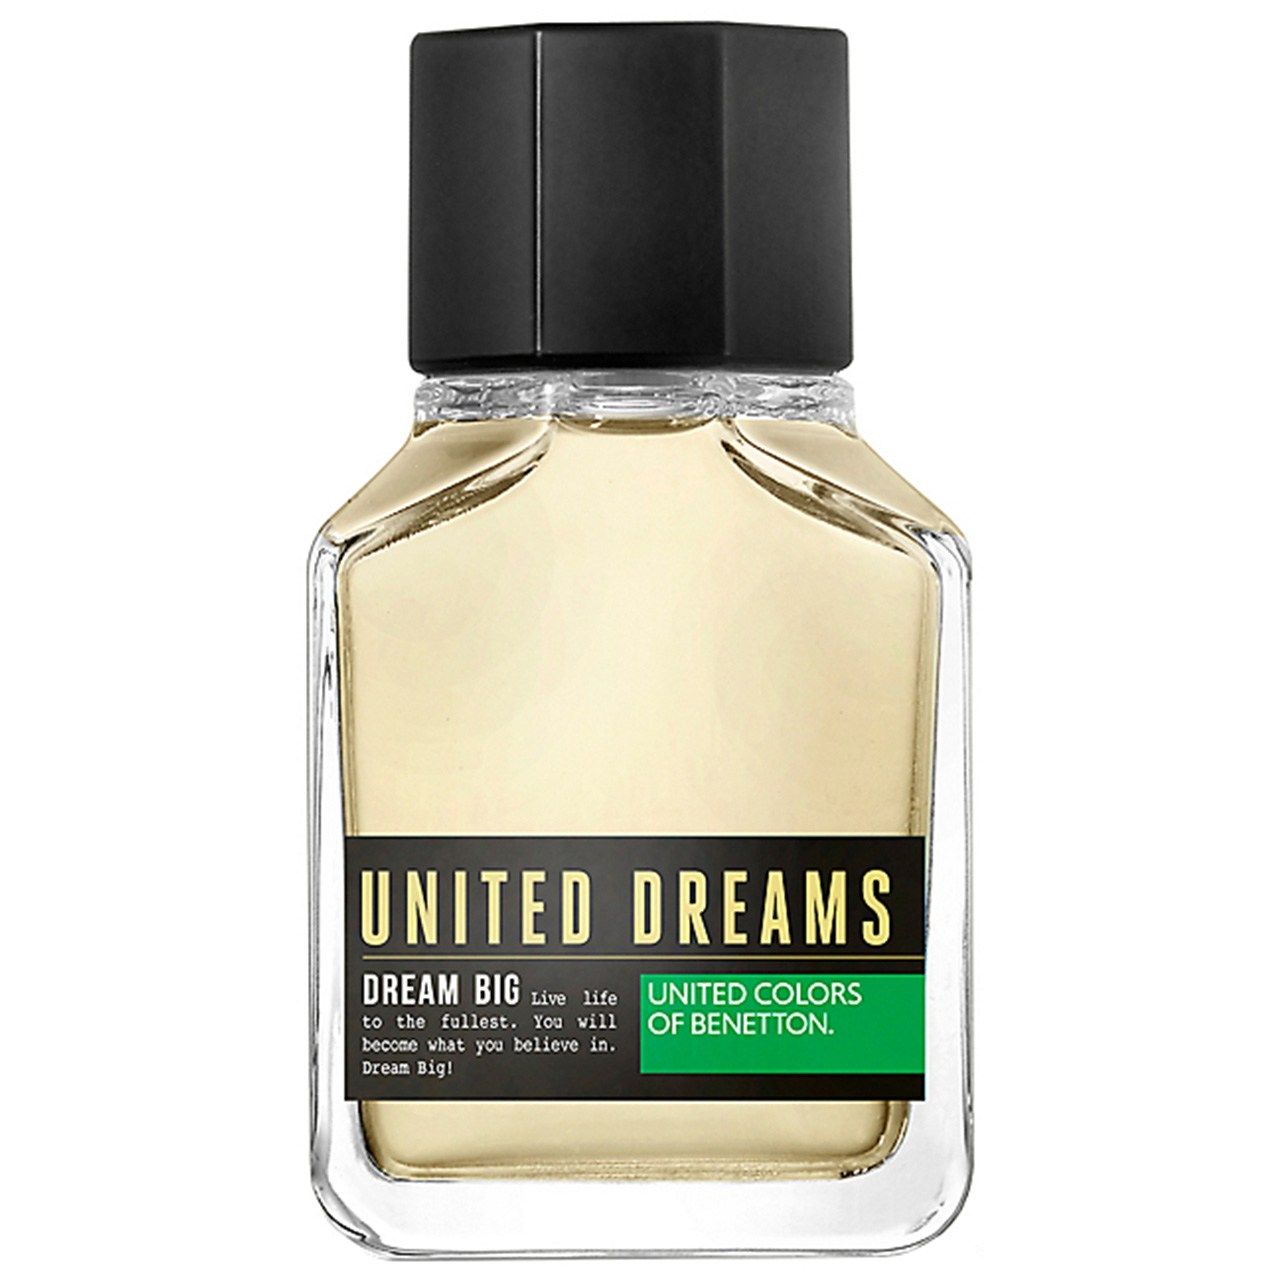 ادو تویلت مردانه بنتون مدل United Dreams Dream Big حجم 100 میلی لیتر -  - 1